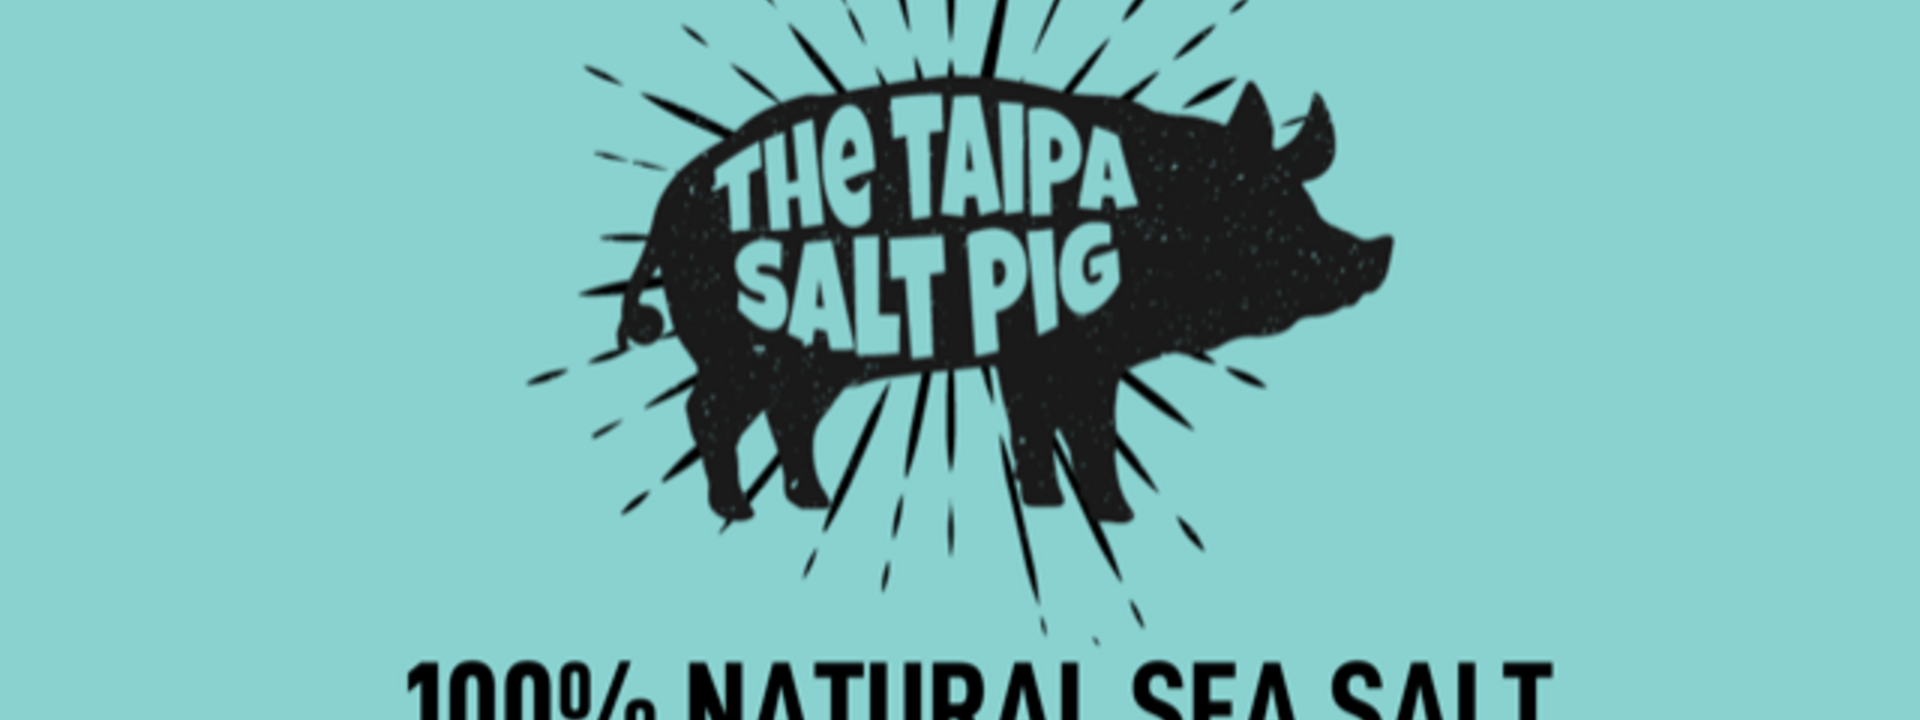 Salt Pig Logo.png